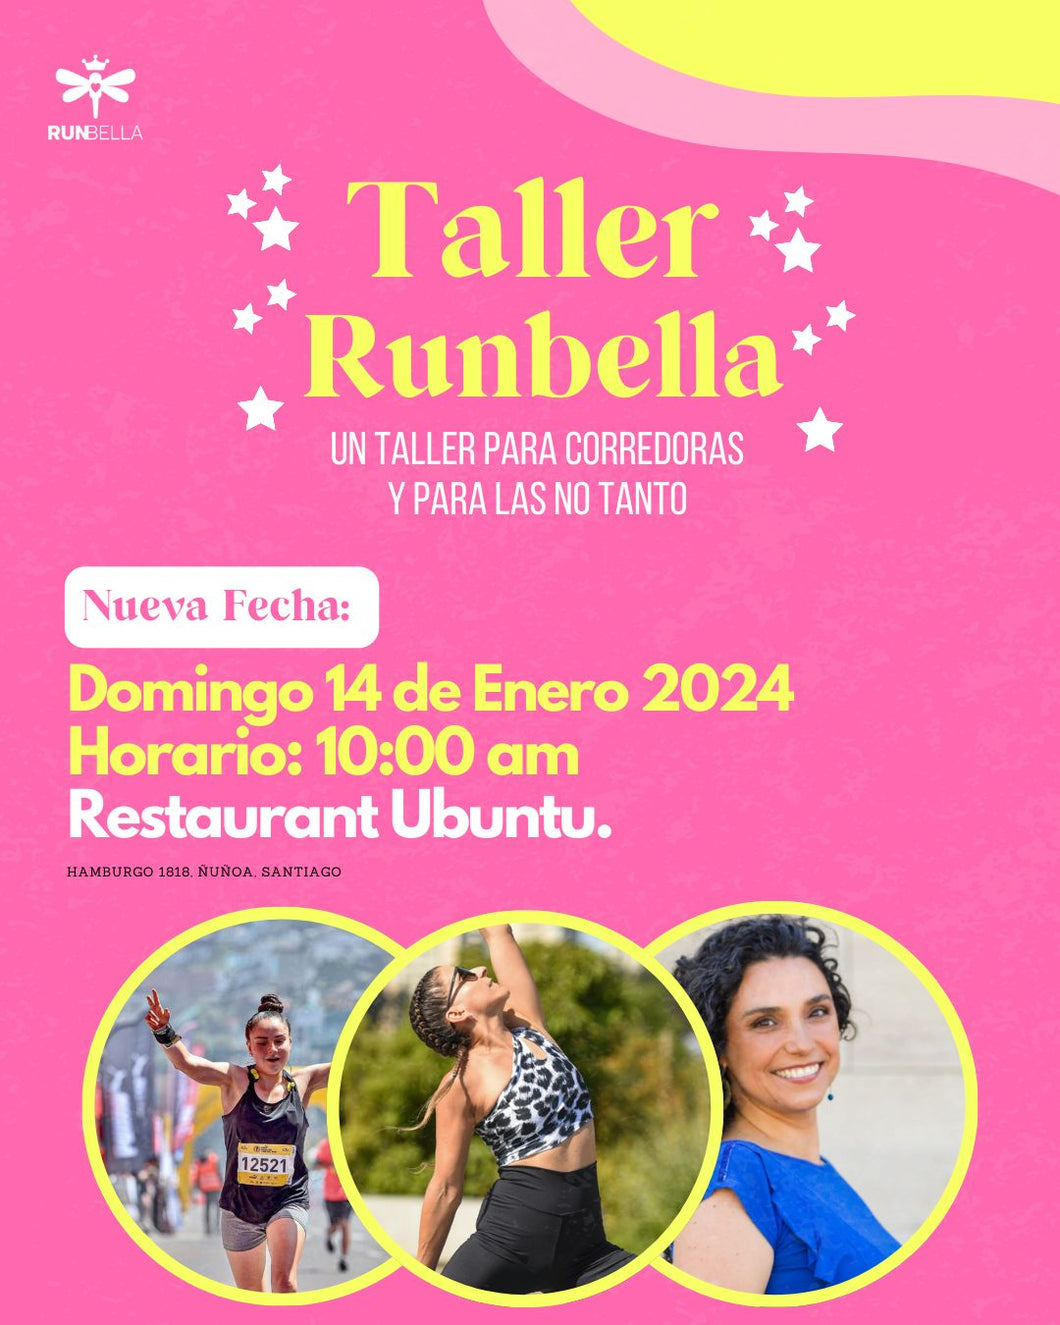 Taller Runbella: Un taller para corredoras 🏃🏻‍♀️